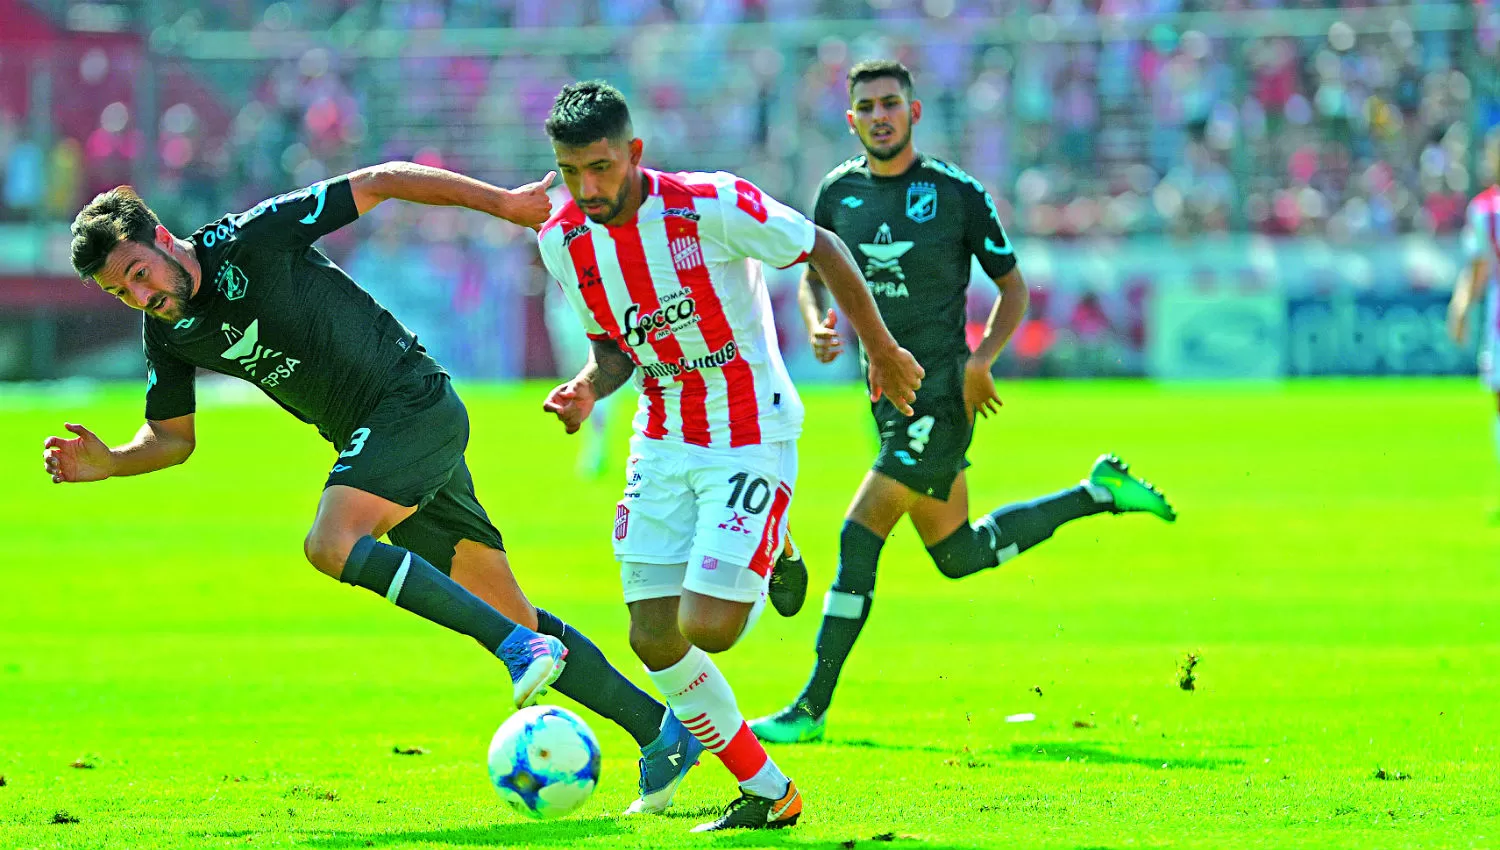 SE FUE. García deja atrás a Dutari y se encamina a asistir a Rodríguez, en el 2-0.